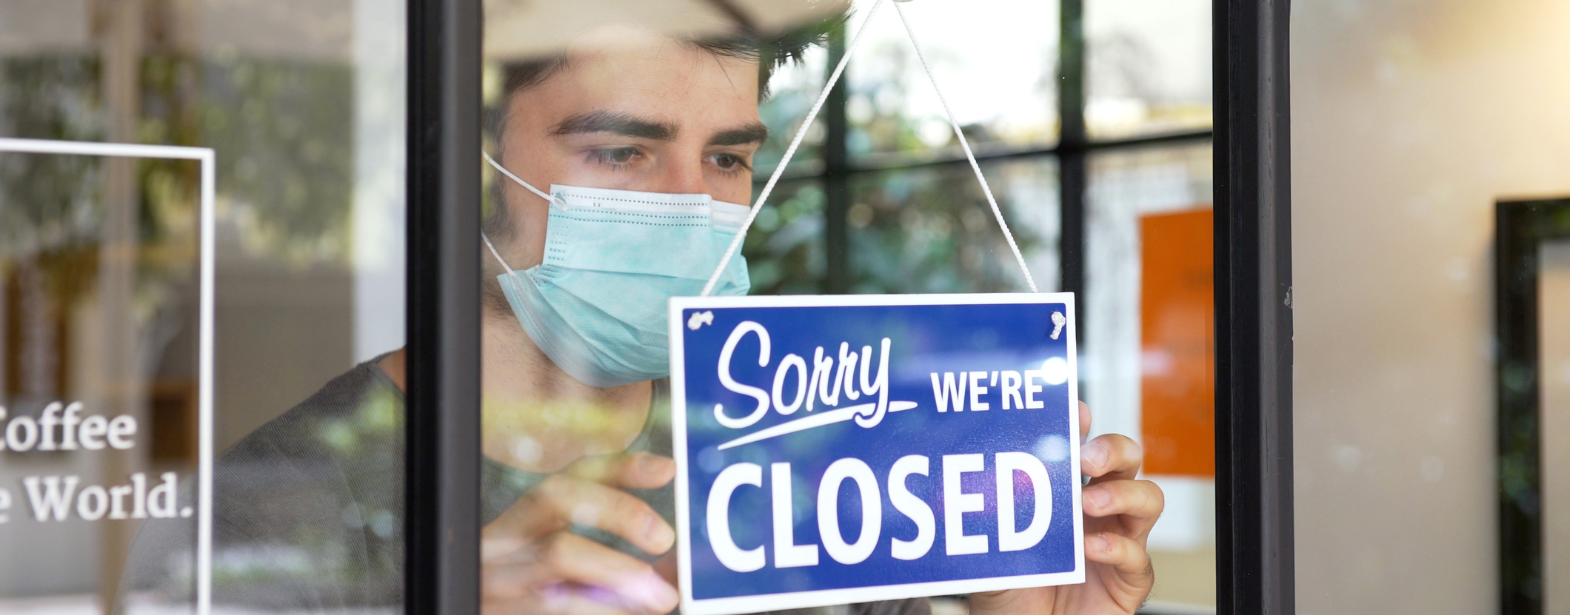 Biznes w dobie pandemii: Jakie pomysły na biznes warto rozważyć